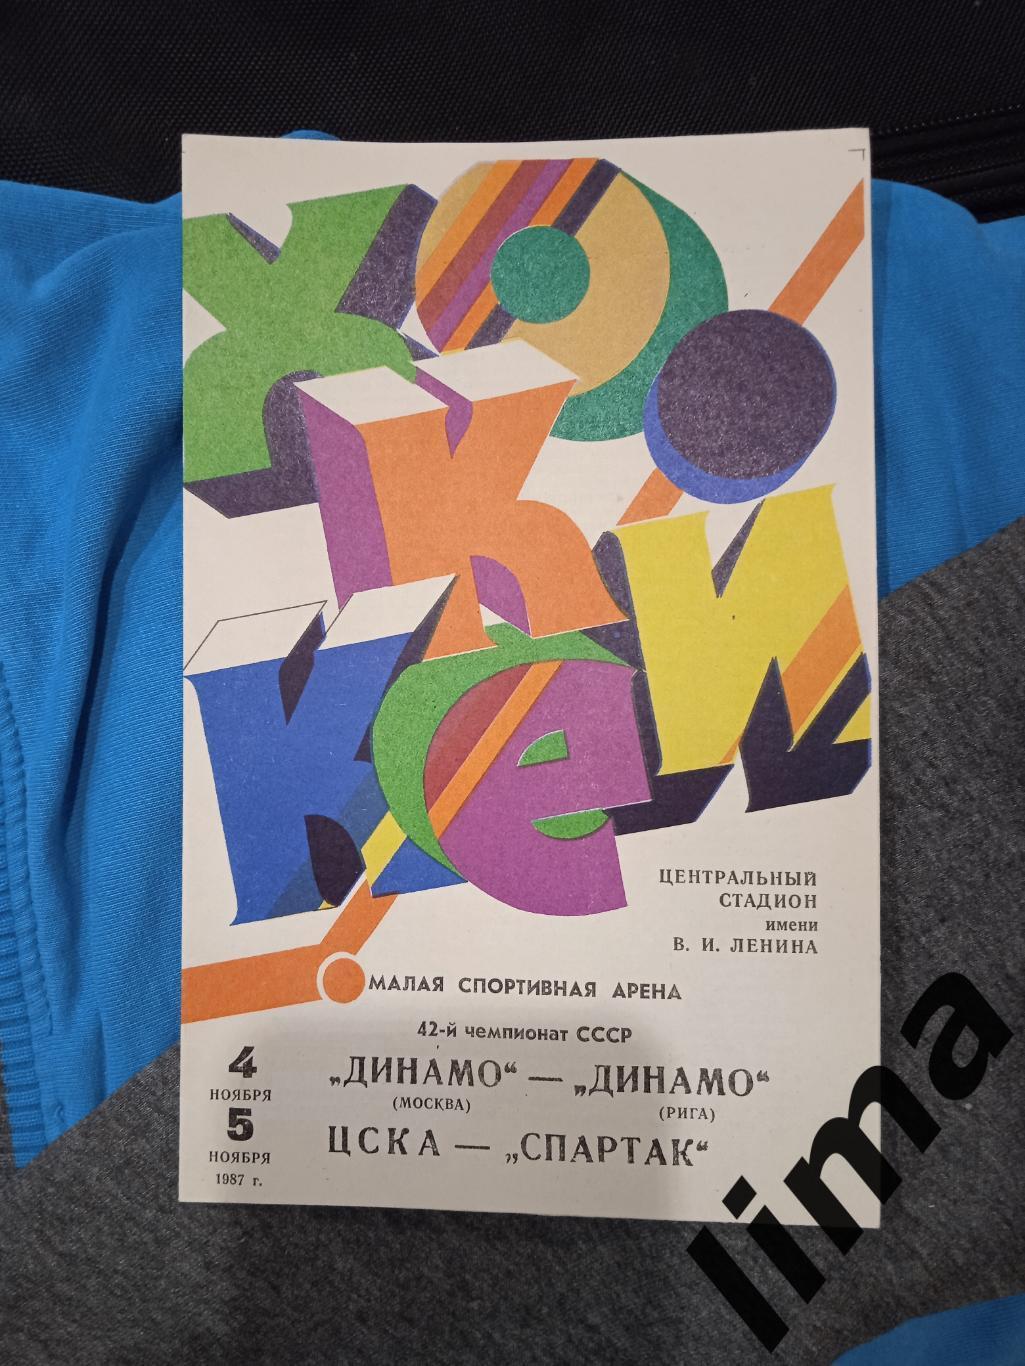 хоккей Динамо Москва -Динамо Рига,Спартак-Цска 1987